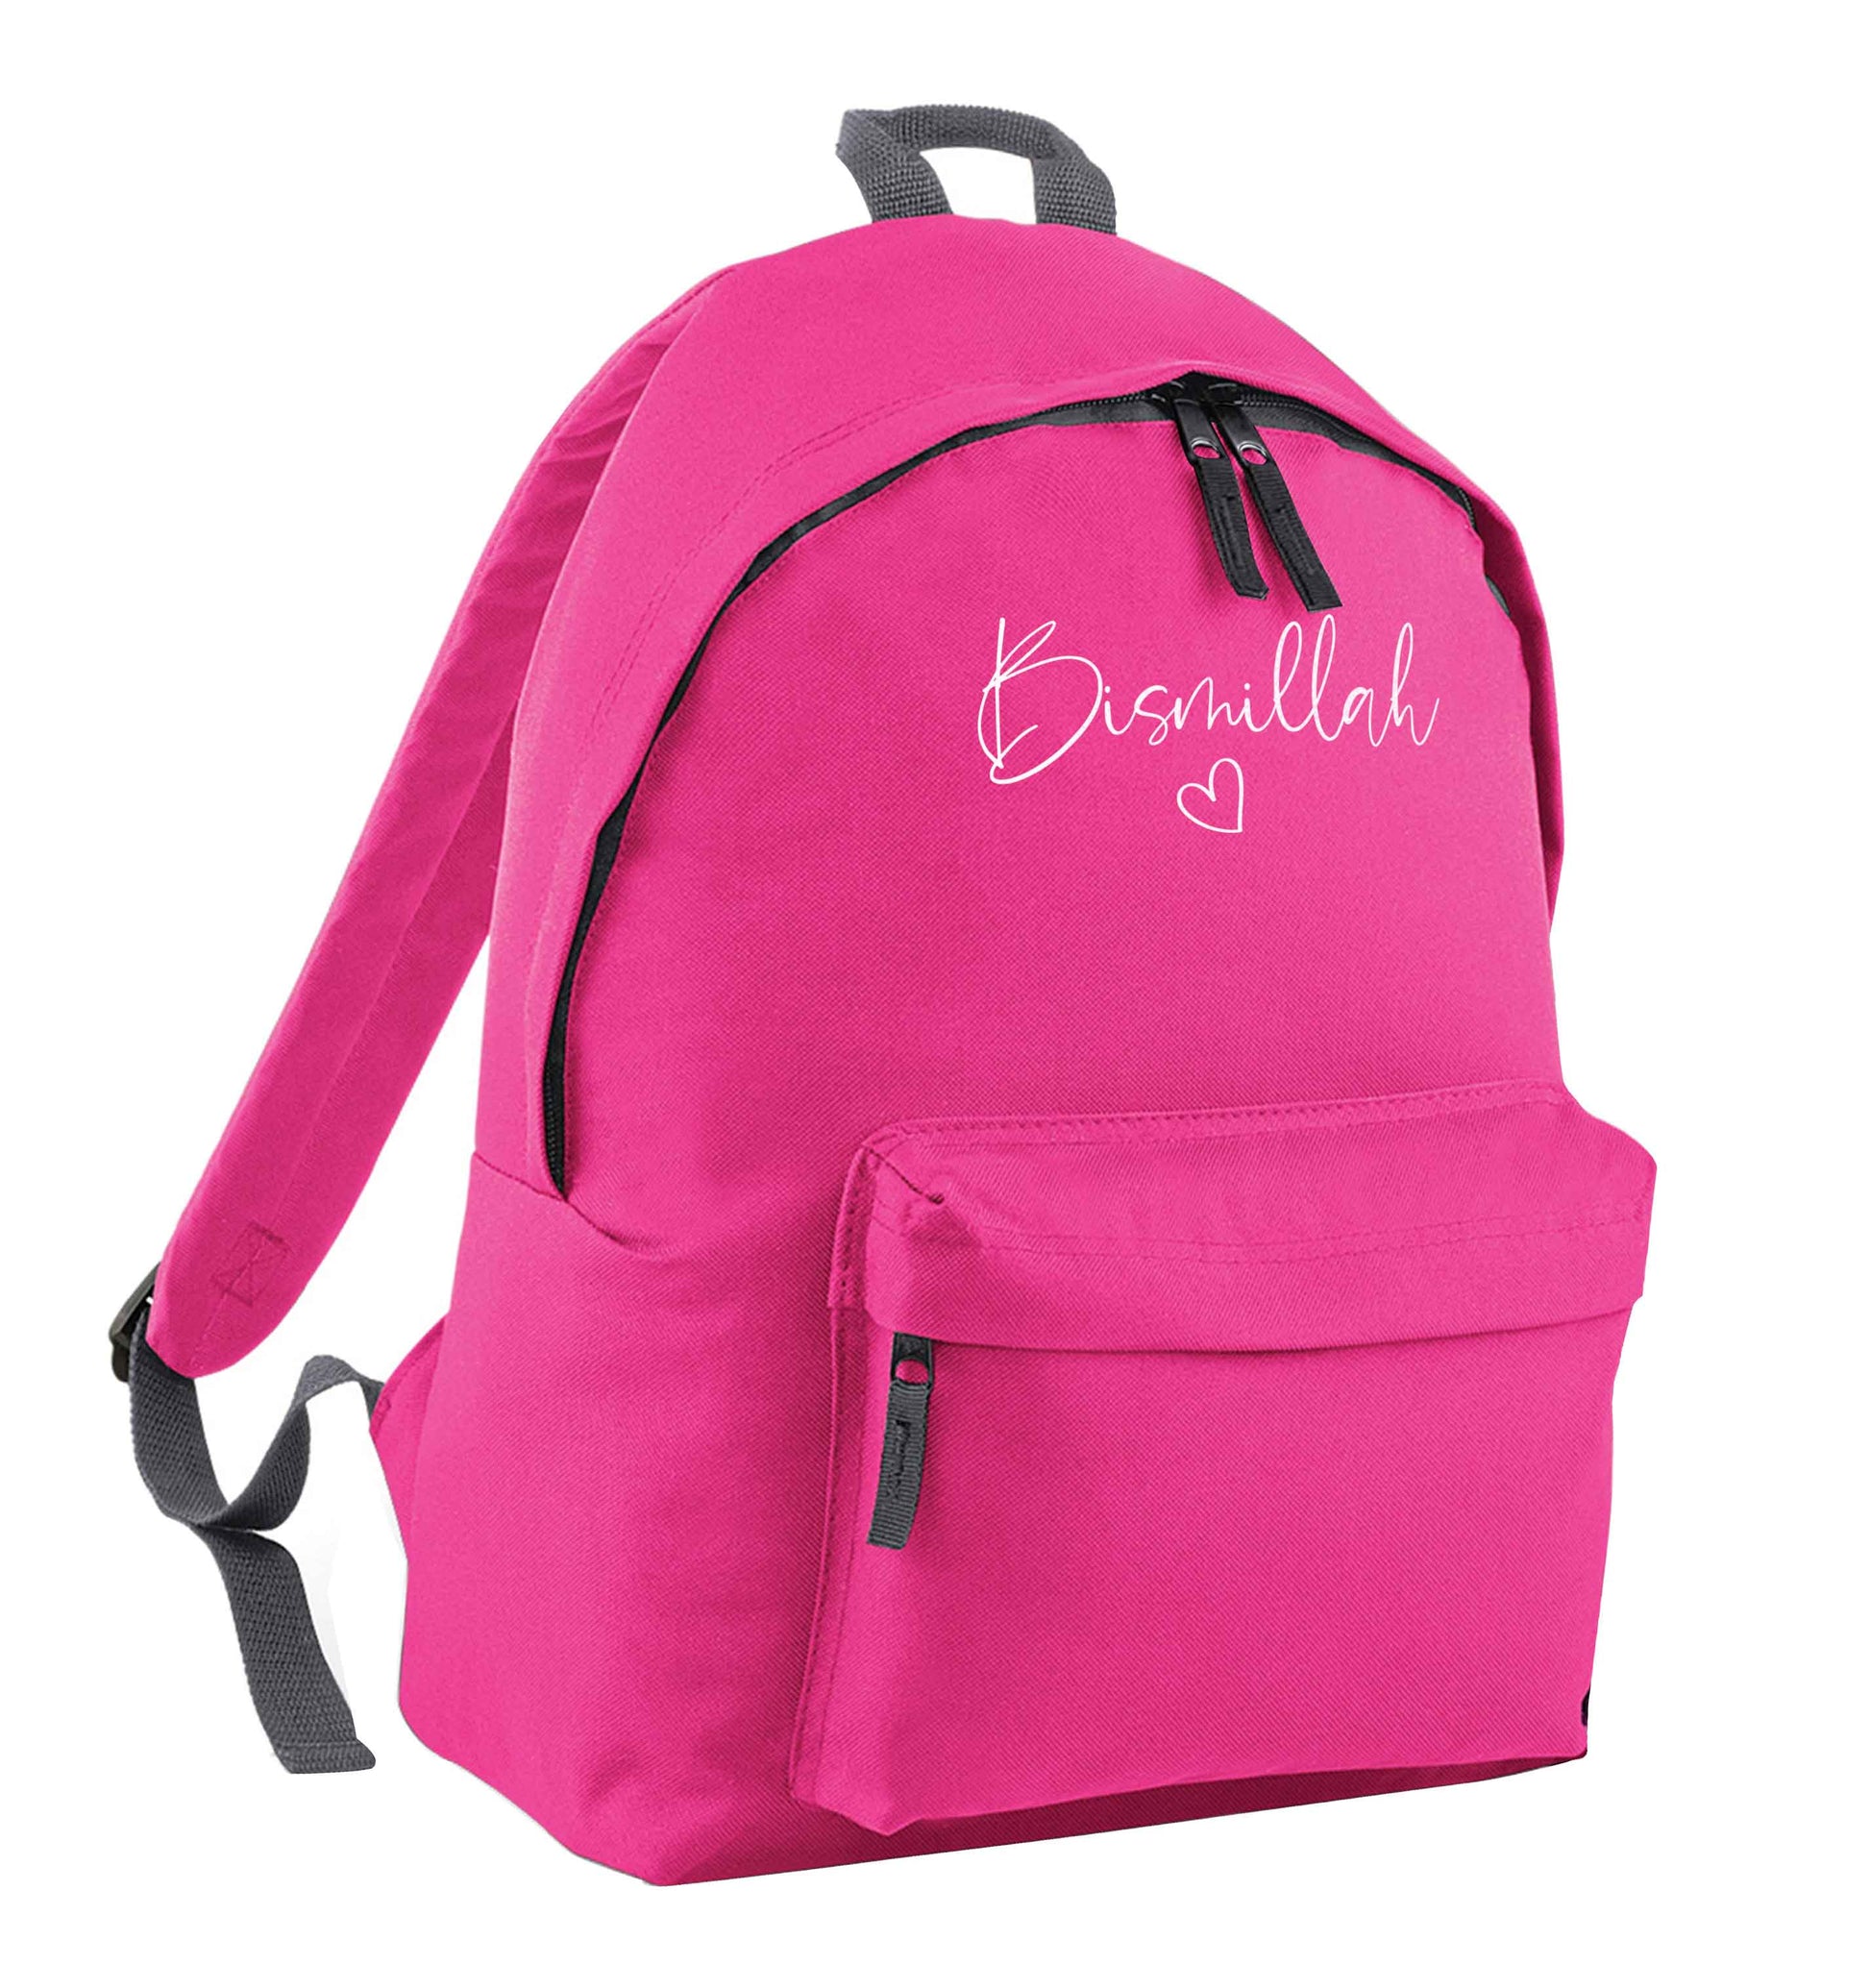 Bismillah pink children's backpack